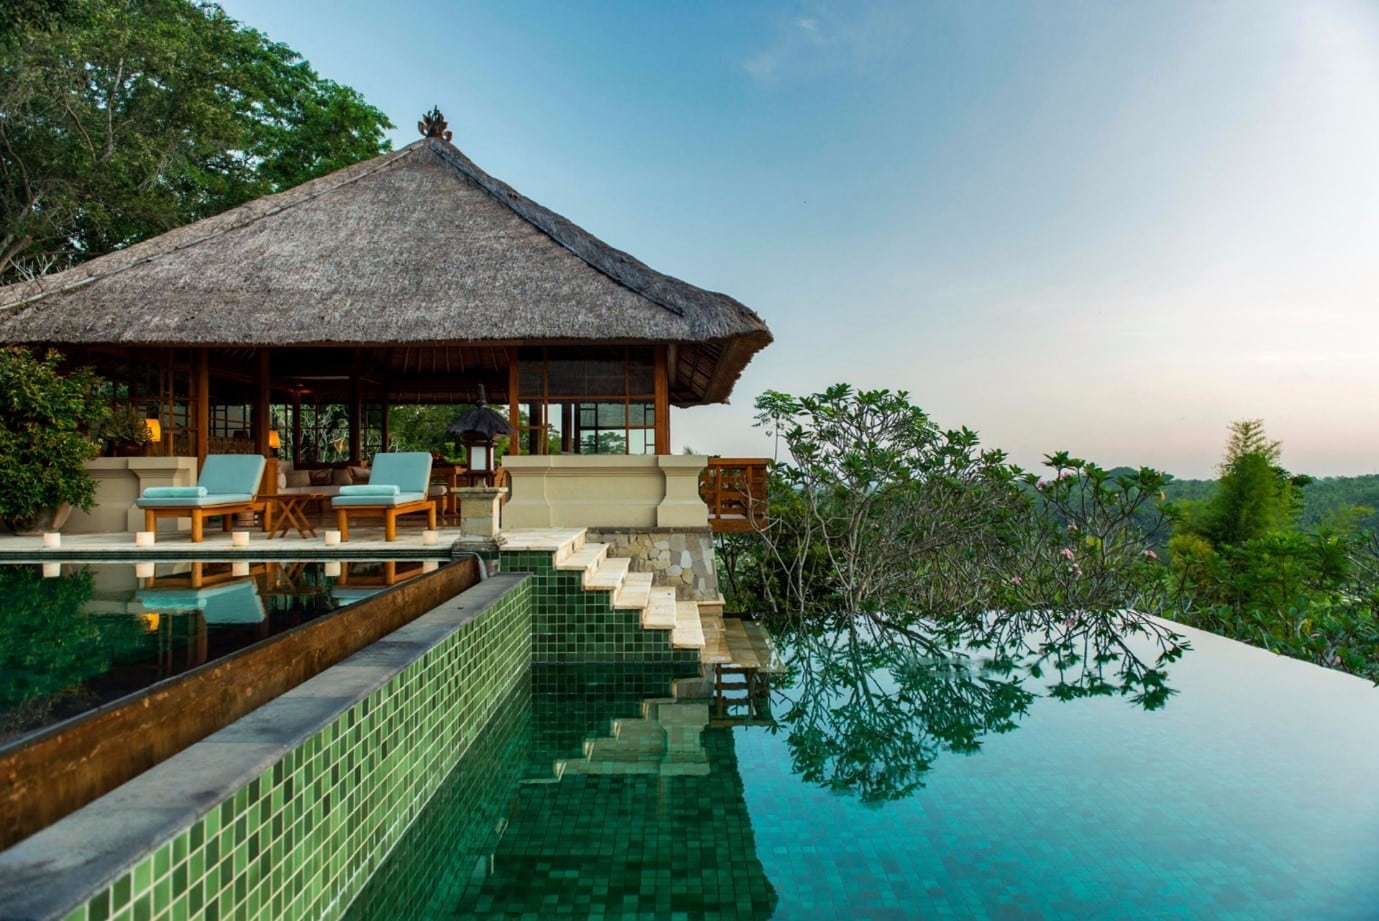 amandari resort in indonesia with infinity pool